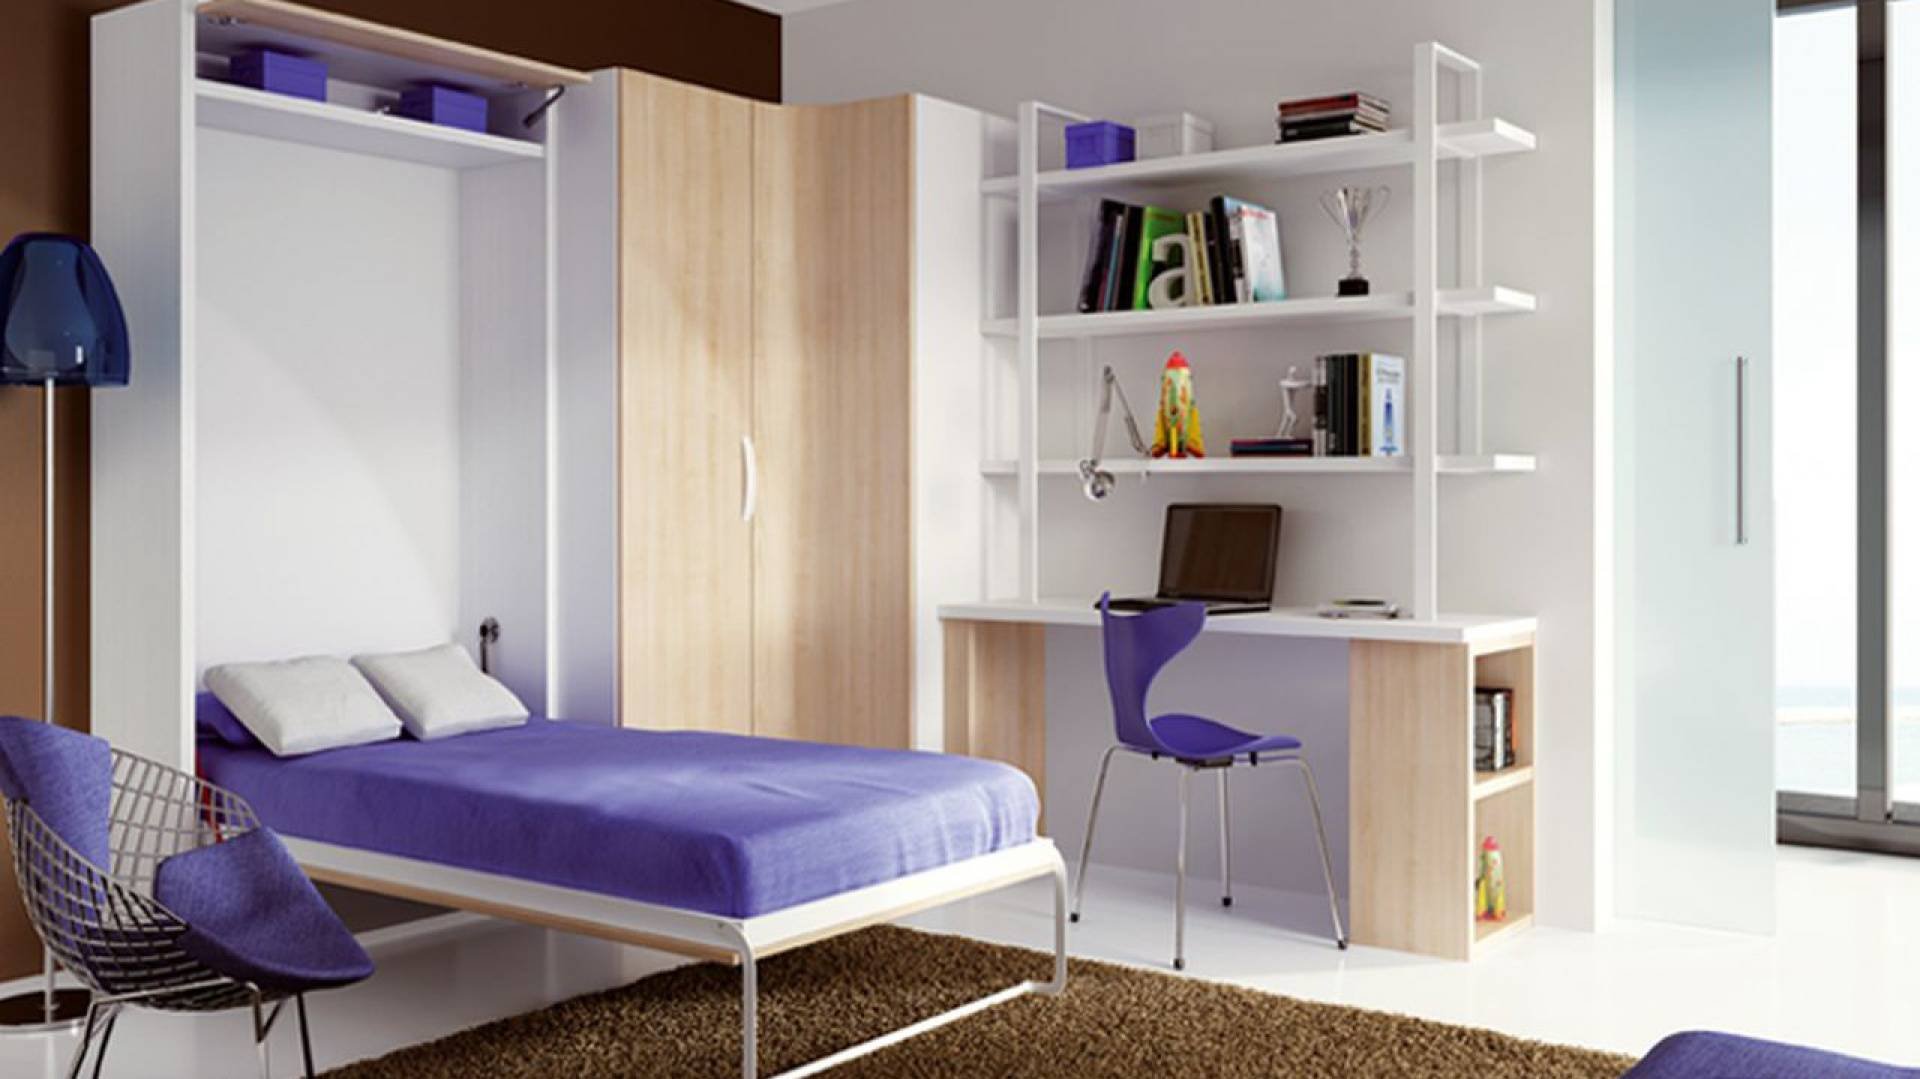 Трансформируемая мебель (35 фото). мебель-трансформер для малогабаритной квартиры (60 фото): функциональность при минимуме пространства поворотная прихожая «нона»